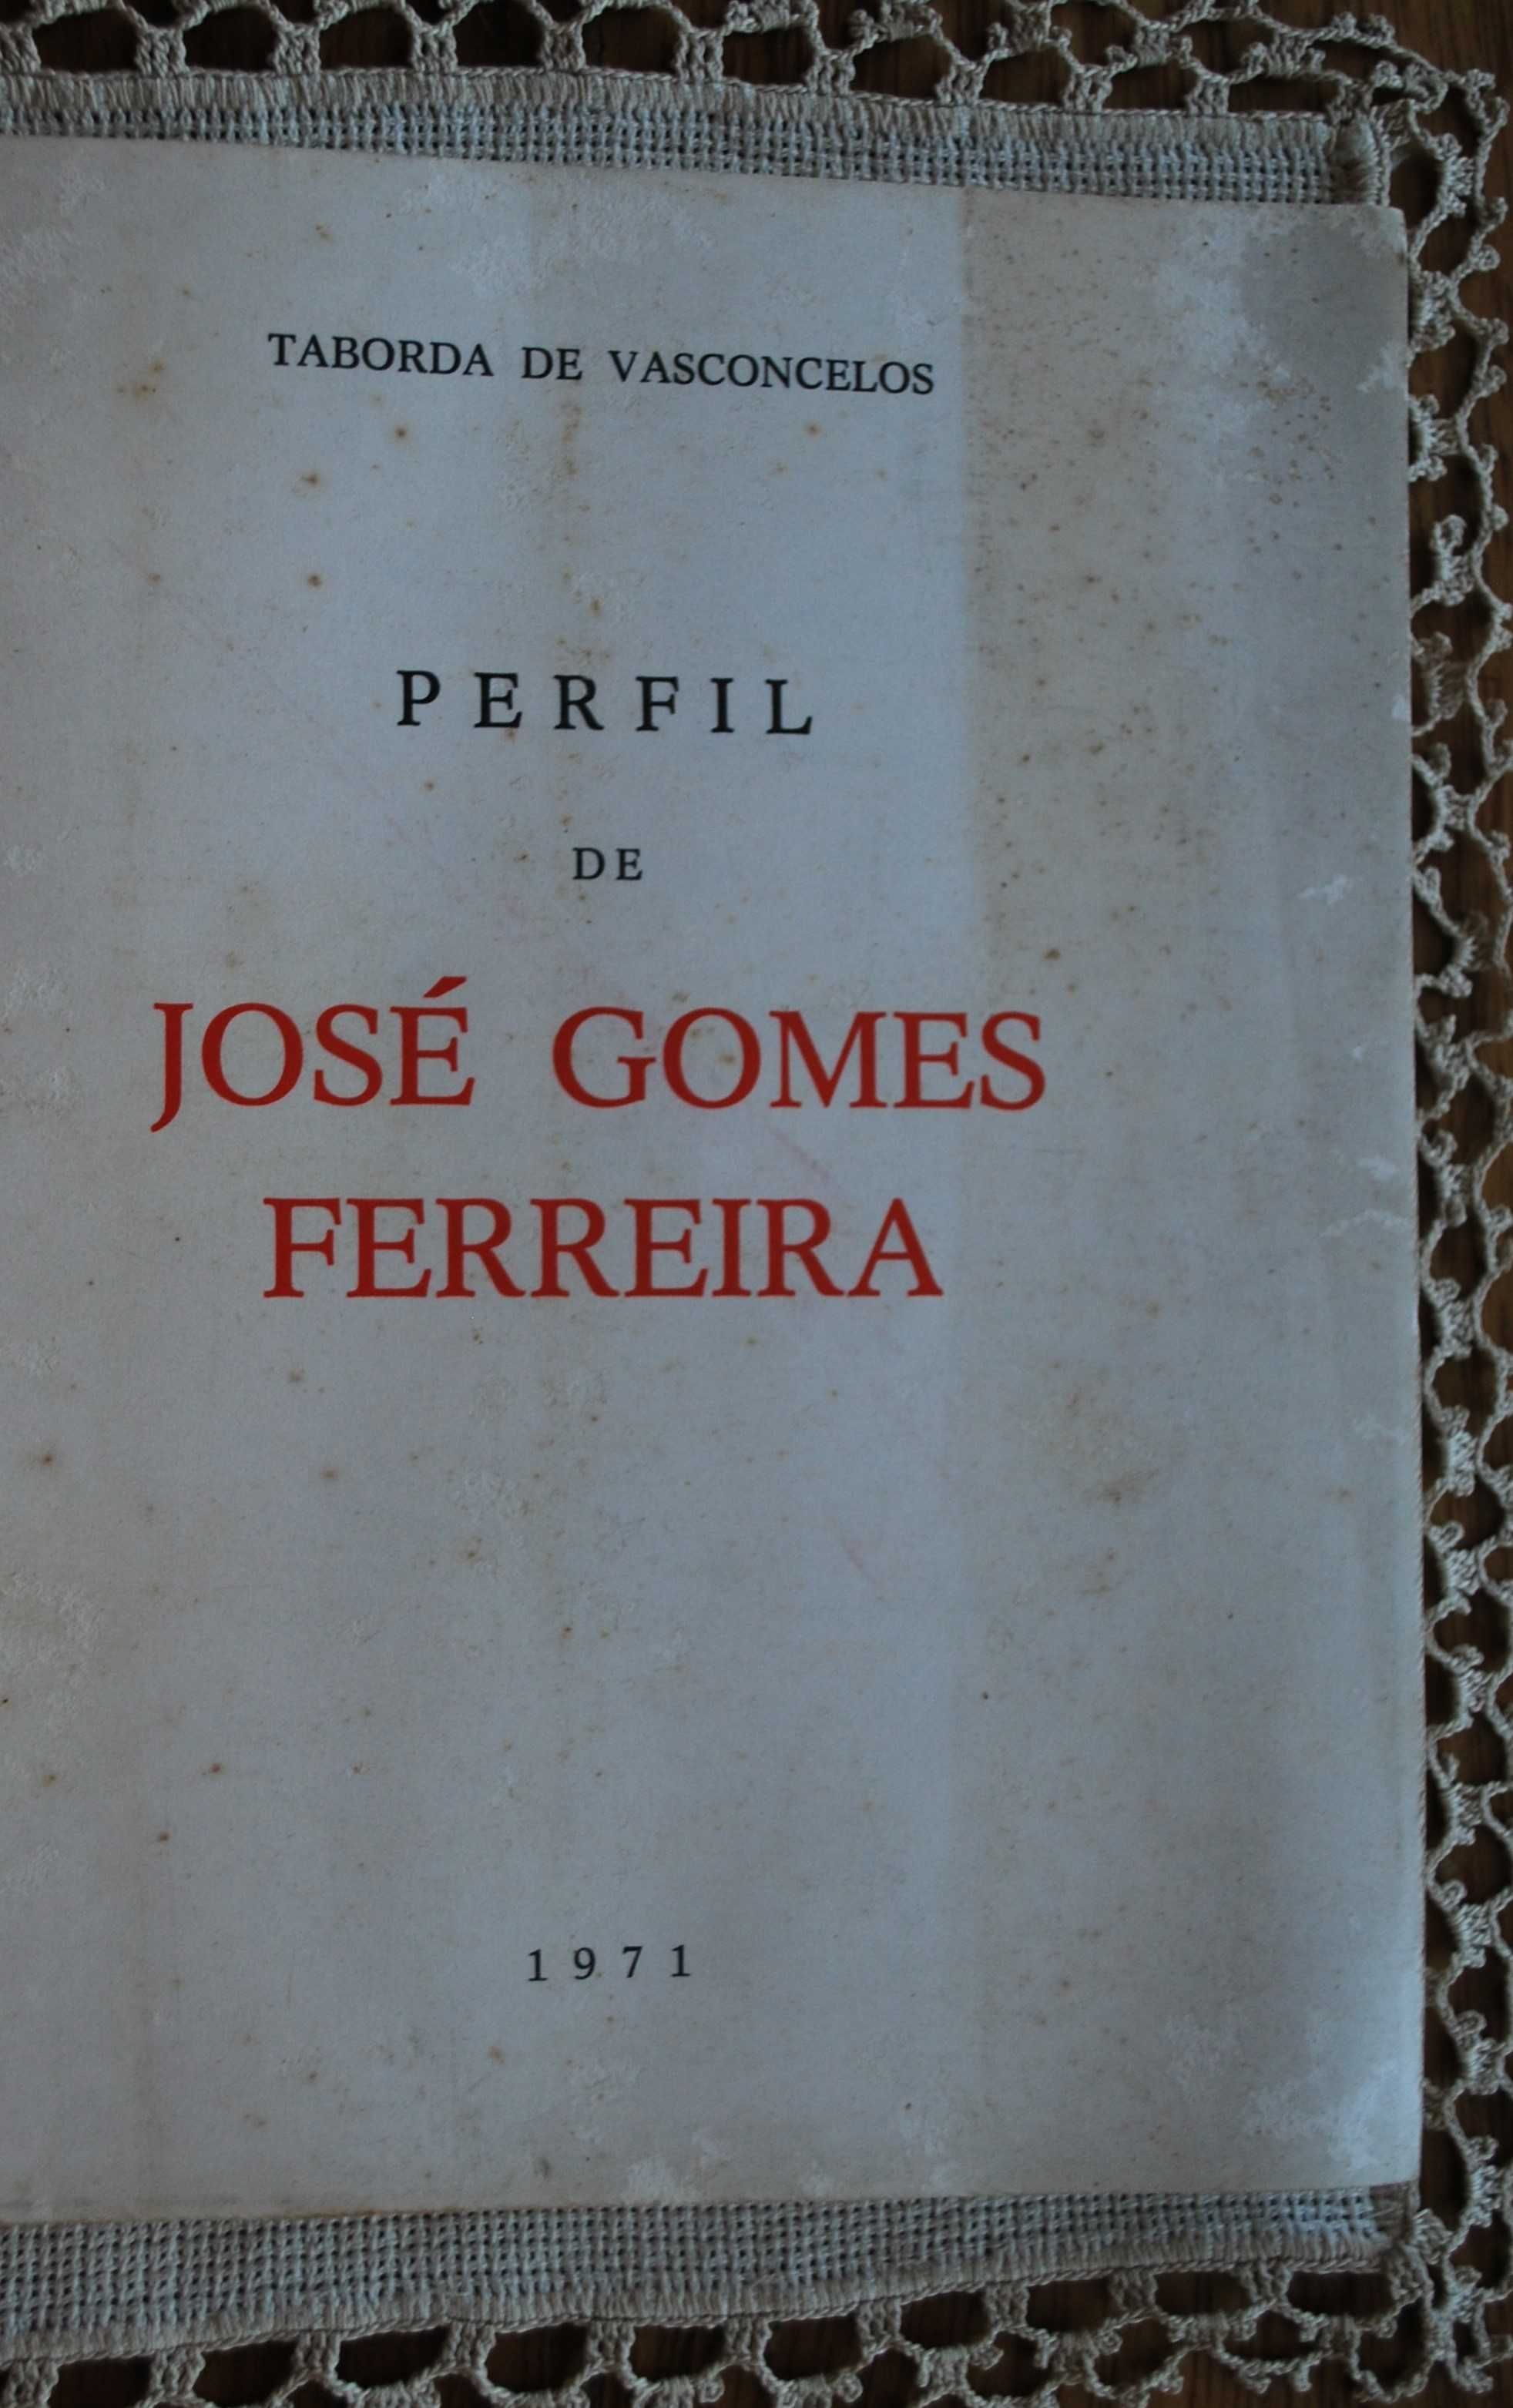 Perfil de José Gomes Ferreira de Taborda de Vasconcelos 1º Edição 1971